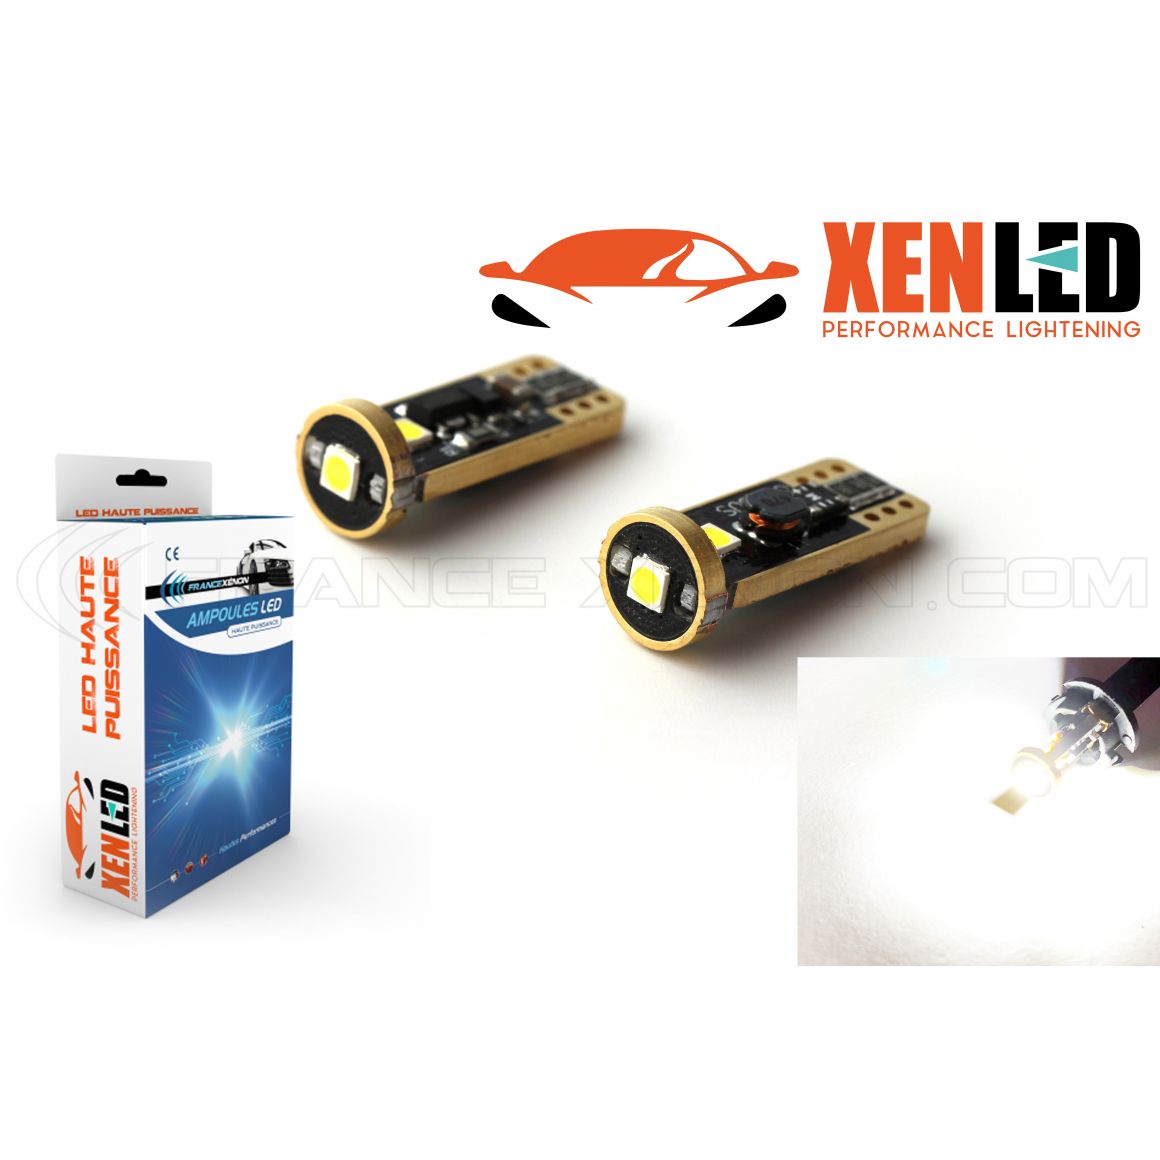 1 x AMPOULE WY5W 4 LED Orange Super Canbus 120Lms XENLED - LED clignotant  haute puissance sans erreur - France-Xenon